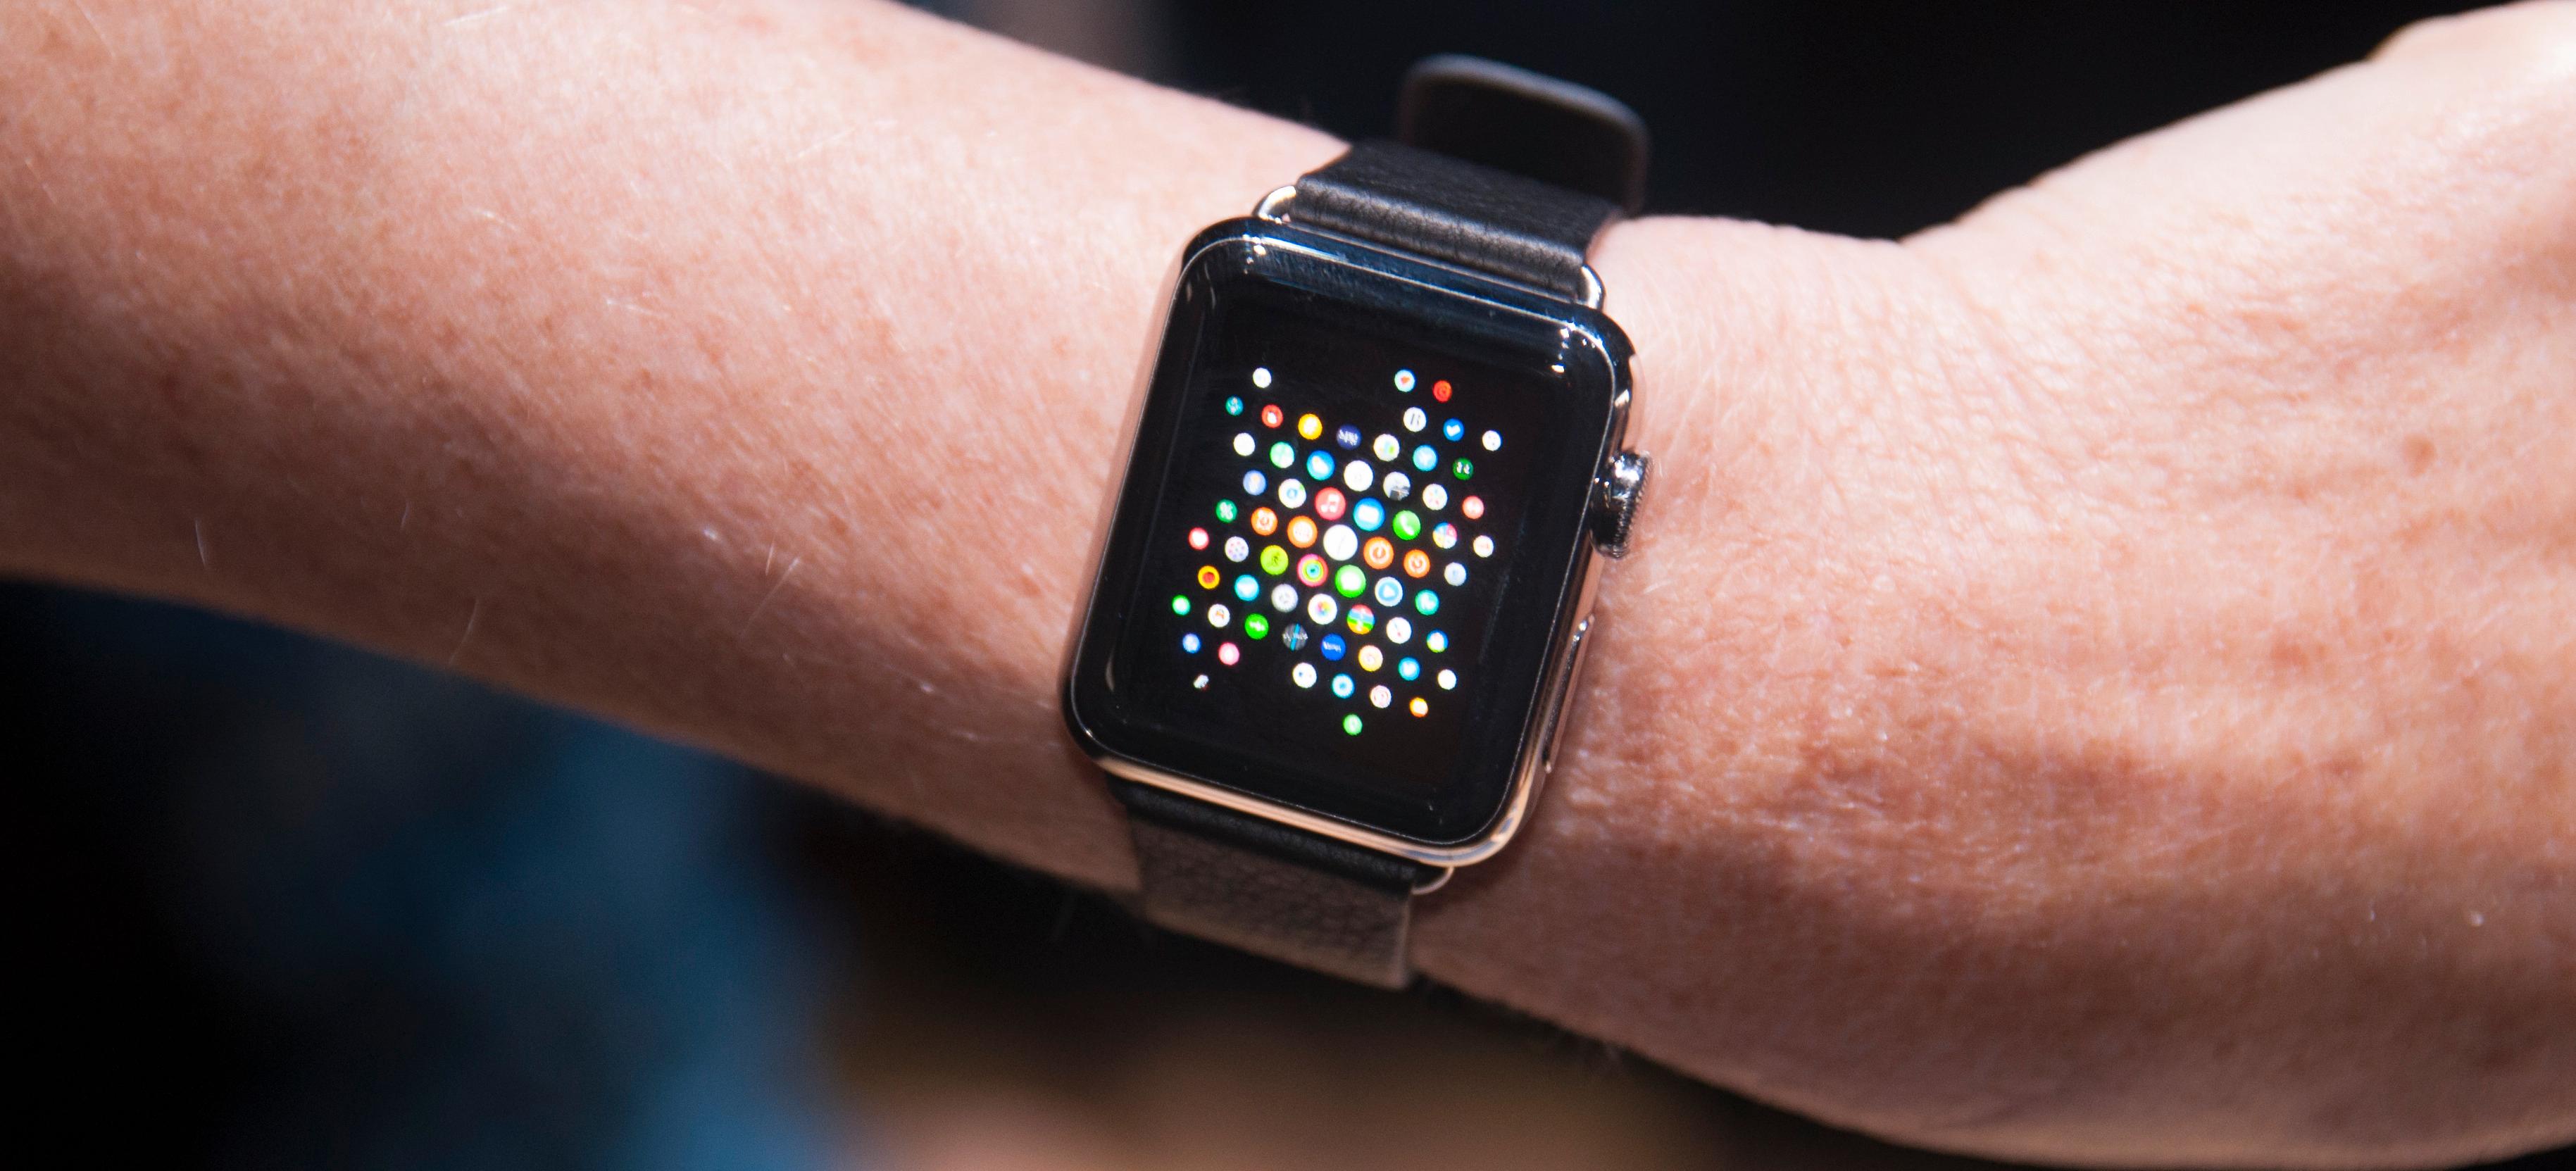 MANGE MODELLER: Apple vil ikke at det skal være "geeky" å bruke en Apple Watch og klokken kommer derfor i en rekke forskjellige utforminger.Foto: Finn Jarle Kvalheim, Tek.no